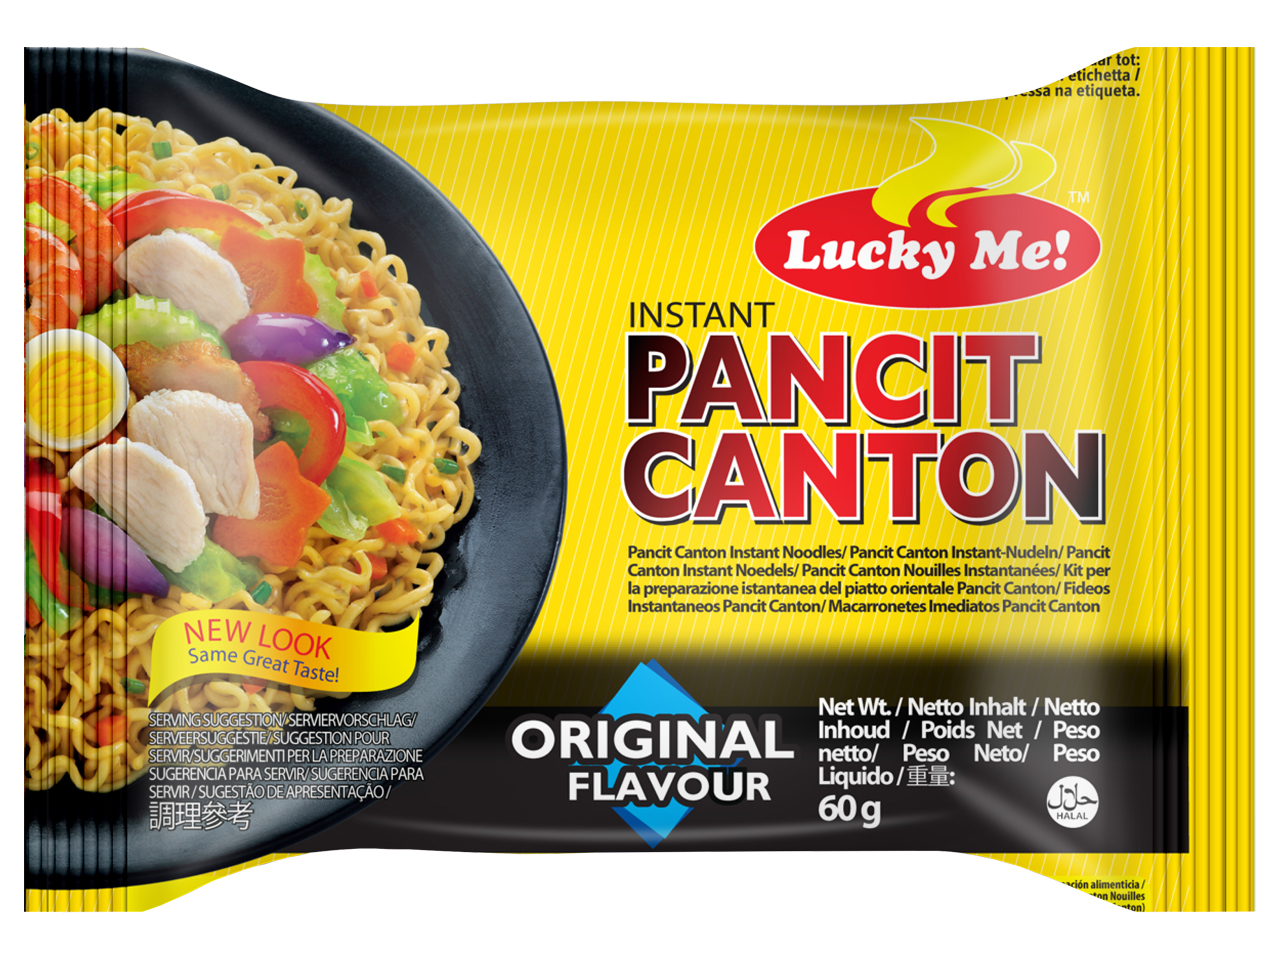 Lucky Me! Instant Pancit Canton Noodles Original Flavour